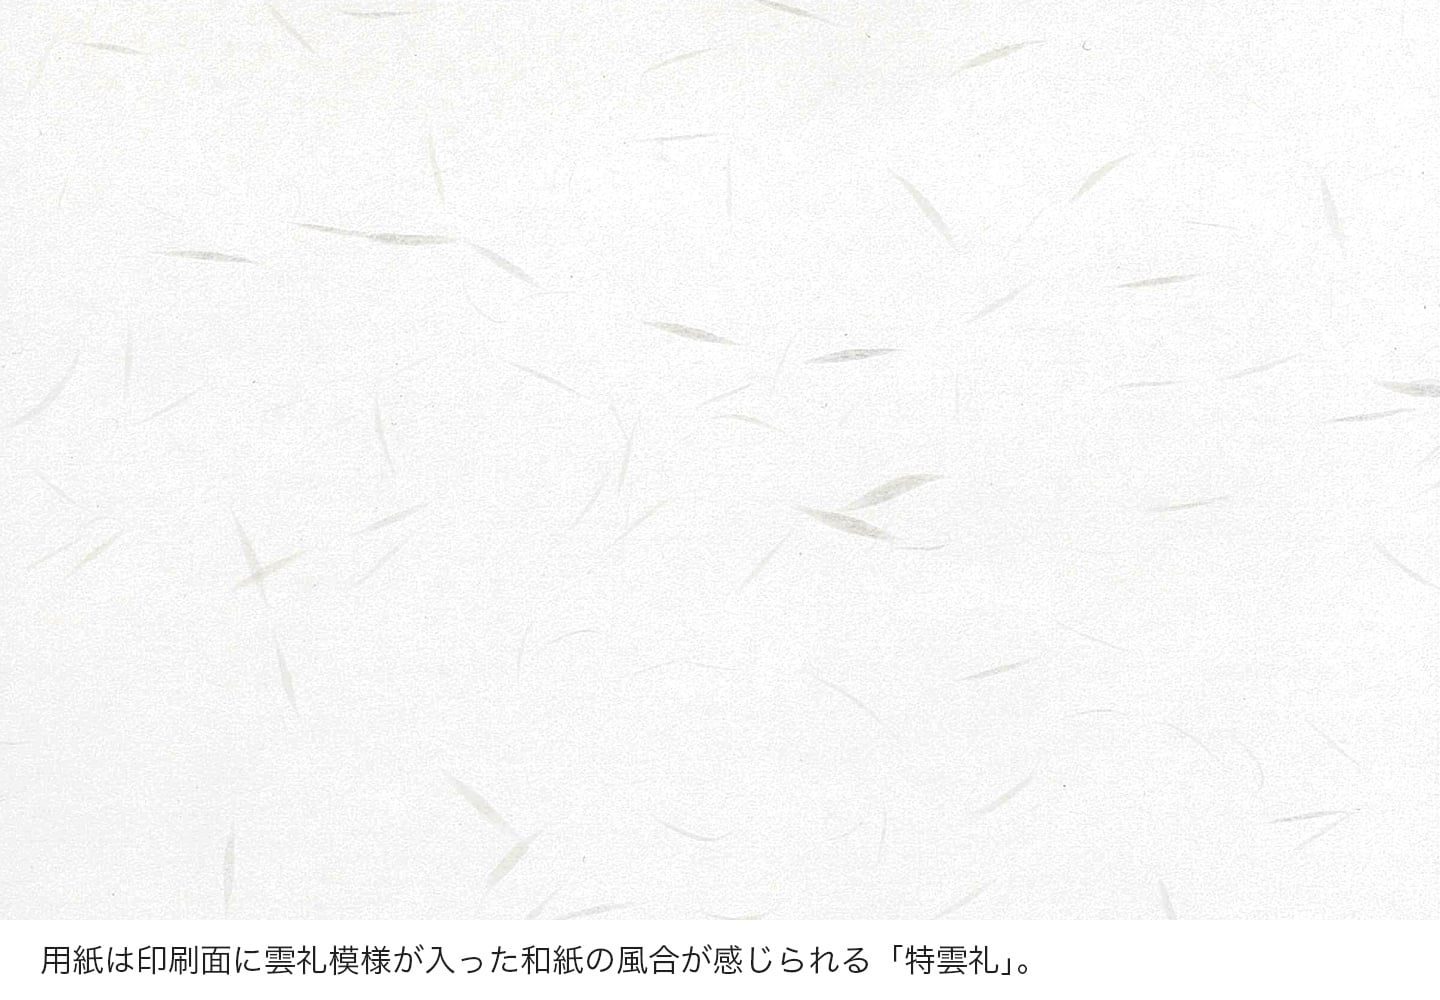 用紙は印刷面に雲礼模様が入った和紙の風合が感じられる「特雲礼」。